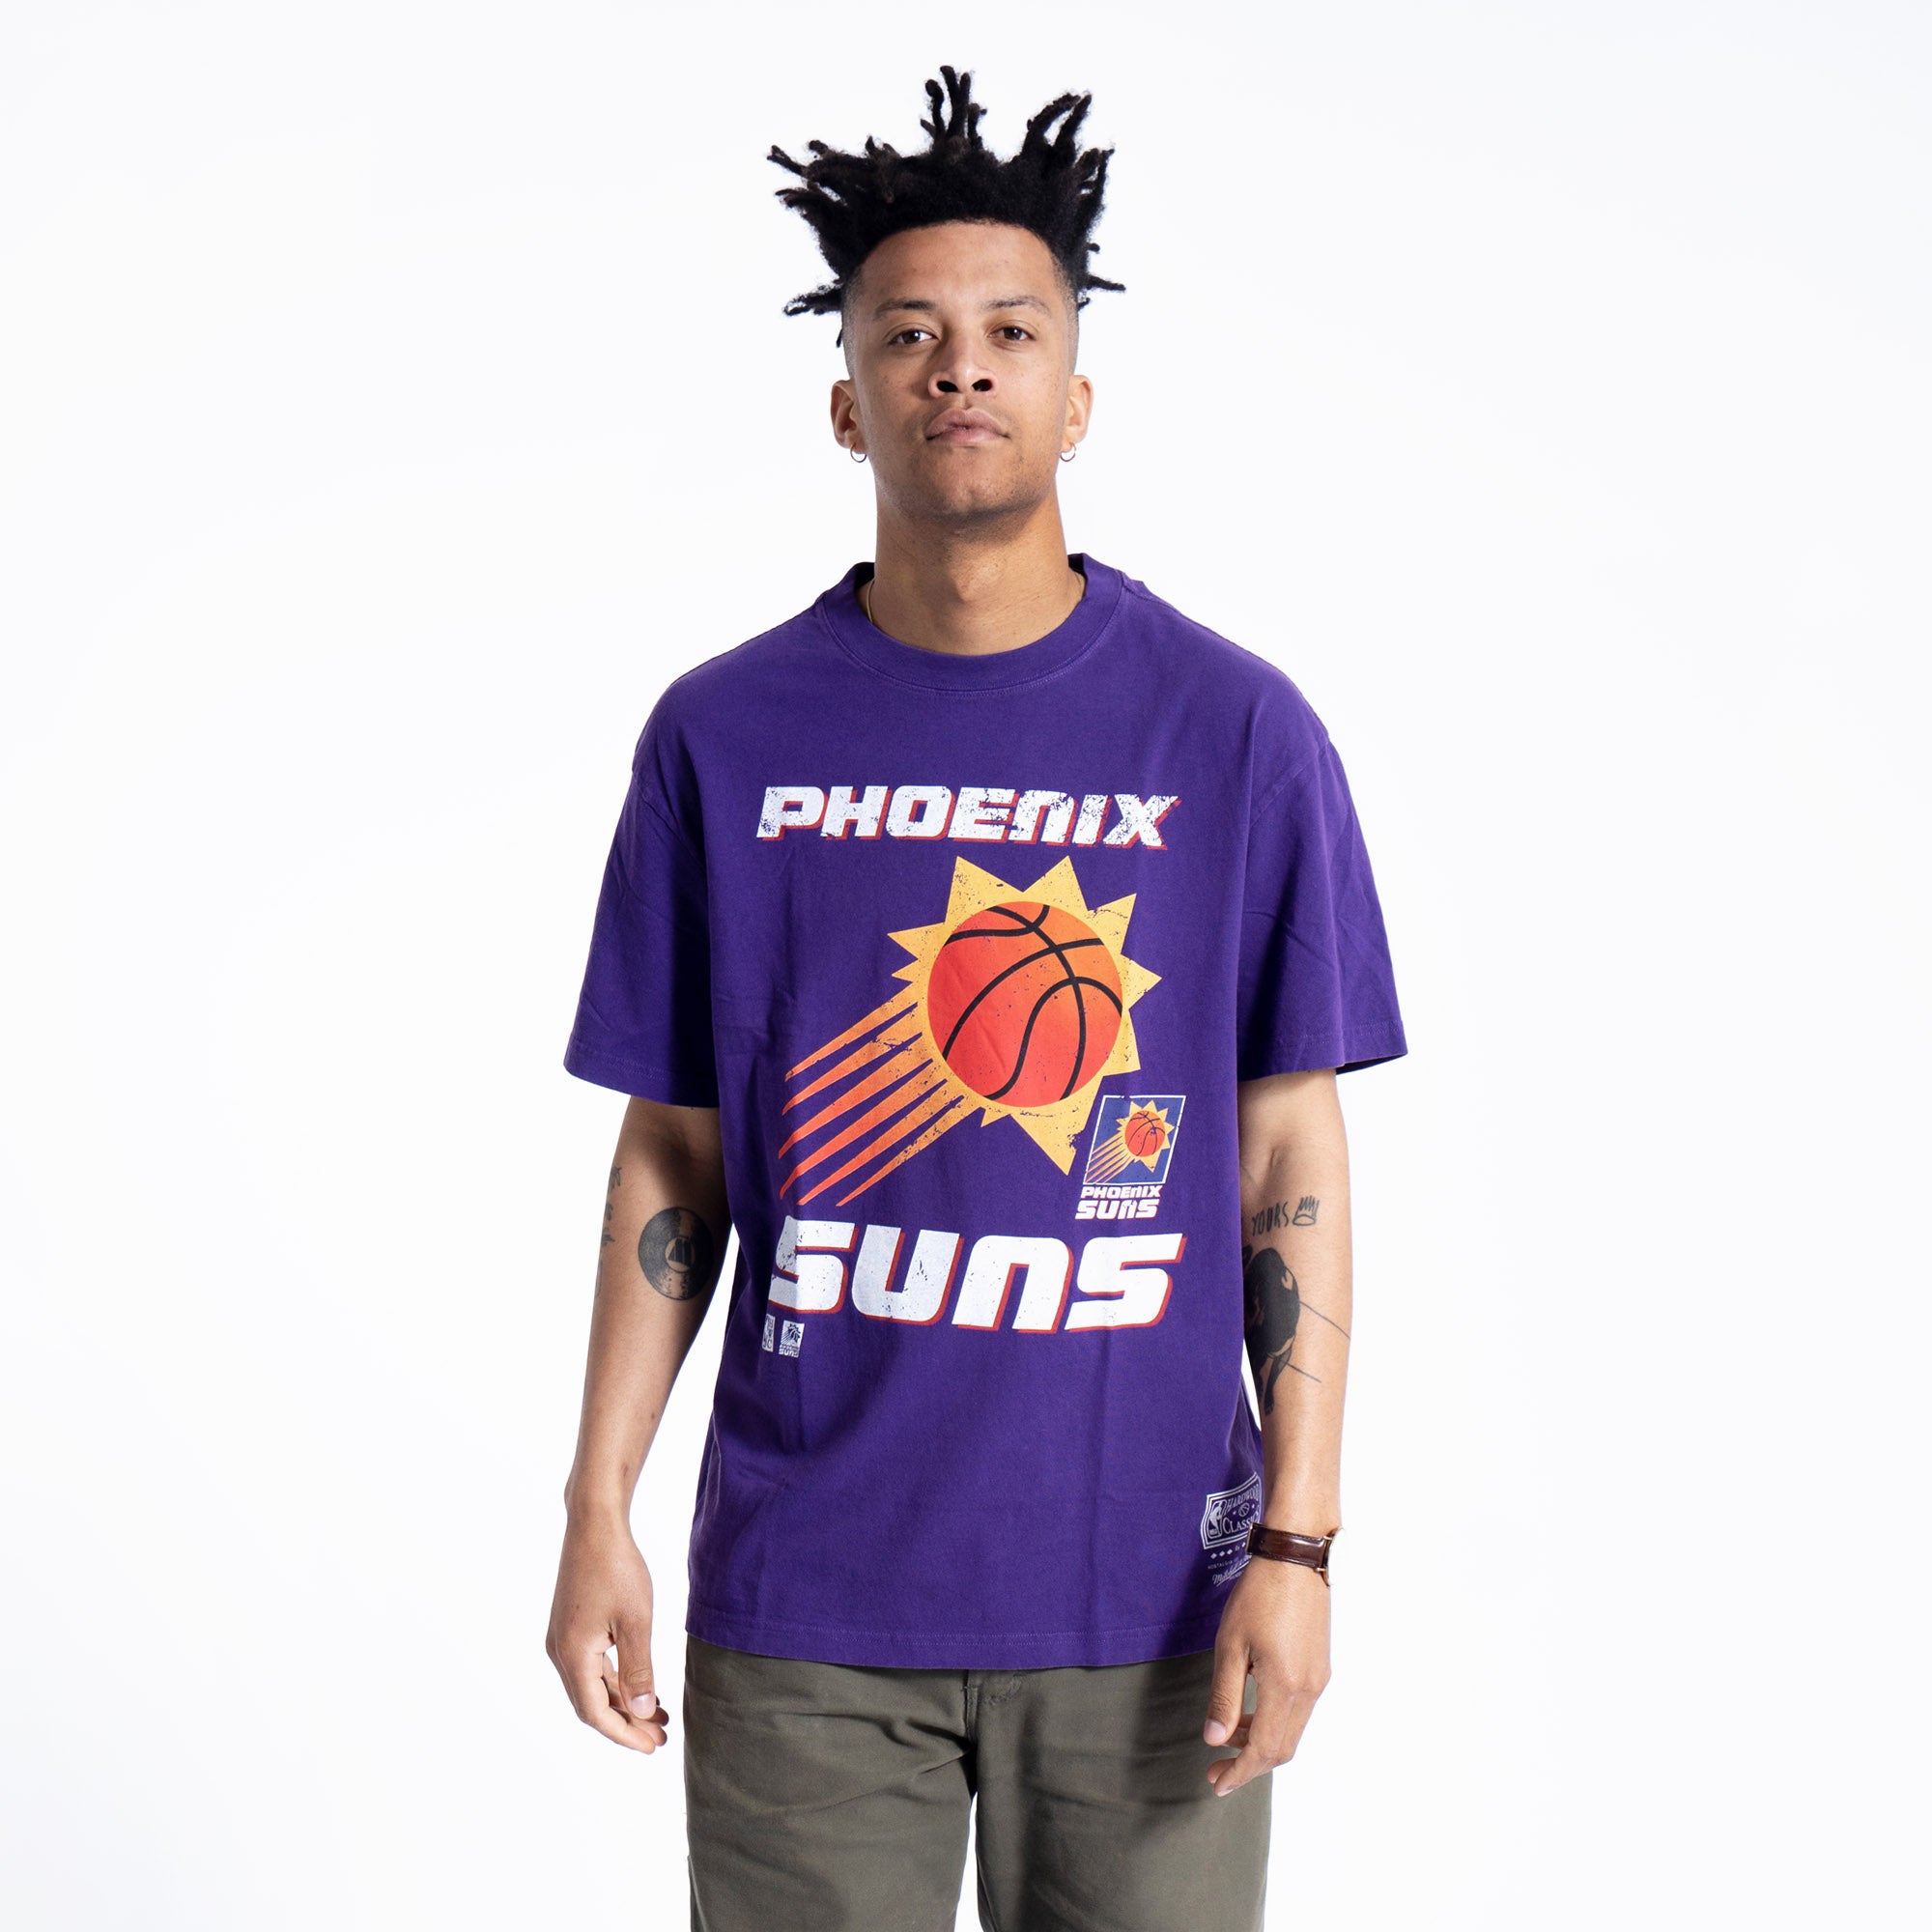 Buy Now Phoenix Suns Vintage T Shirt with Unique Graphic